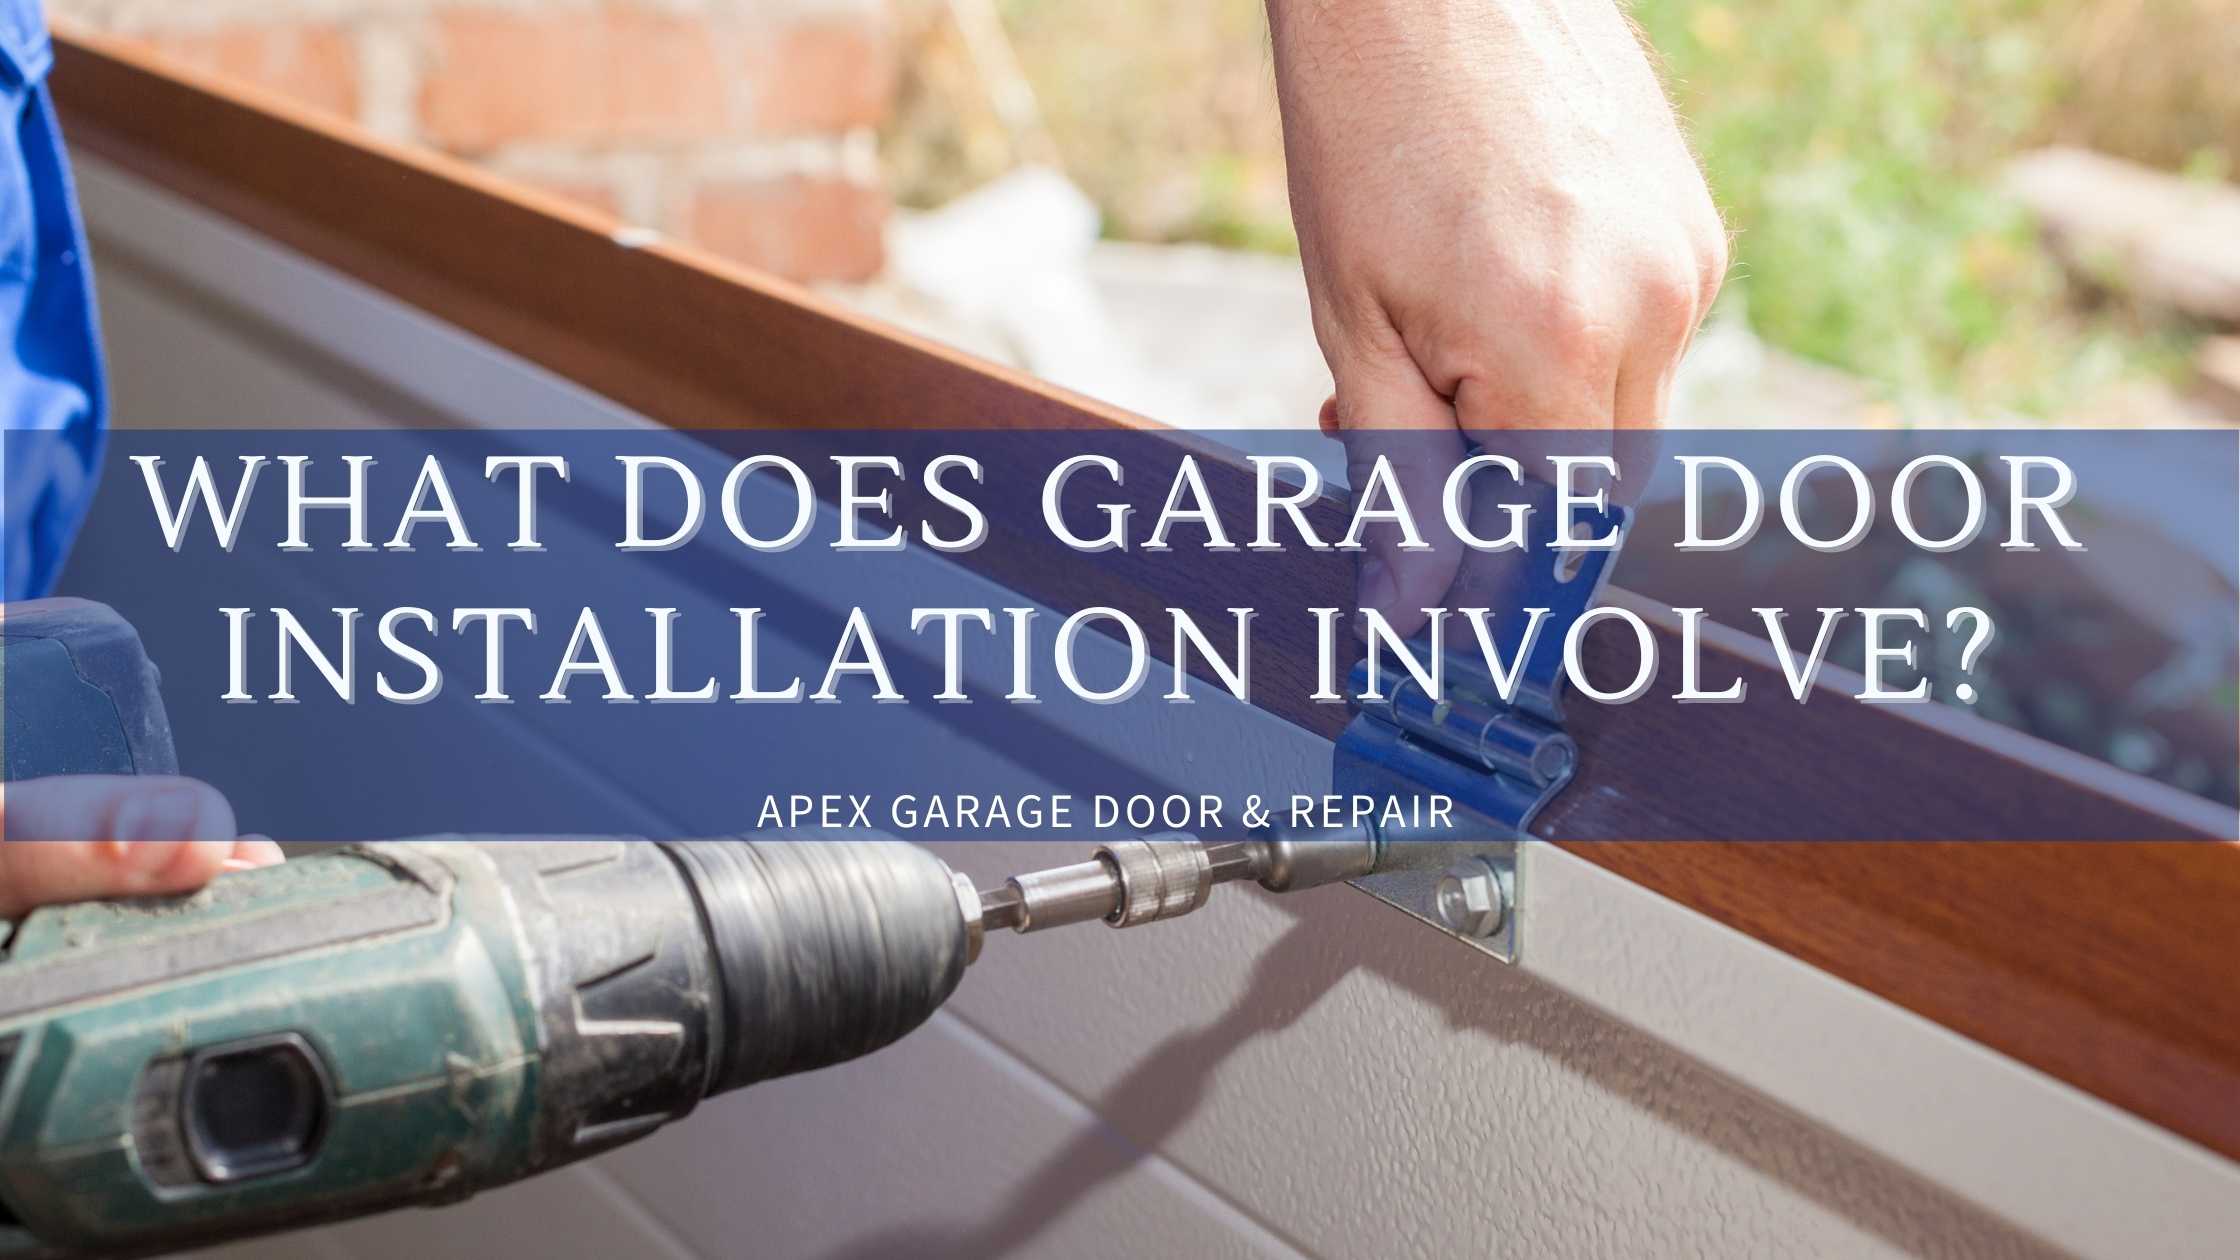 What Does Garage Door Installation Involve?